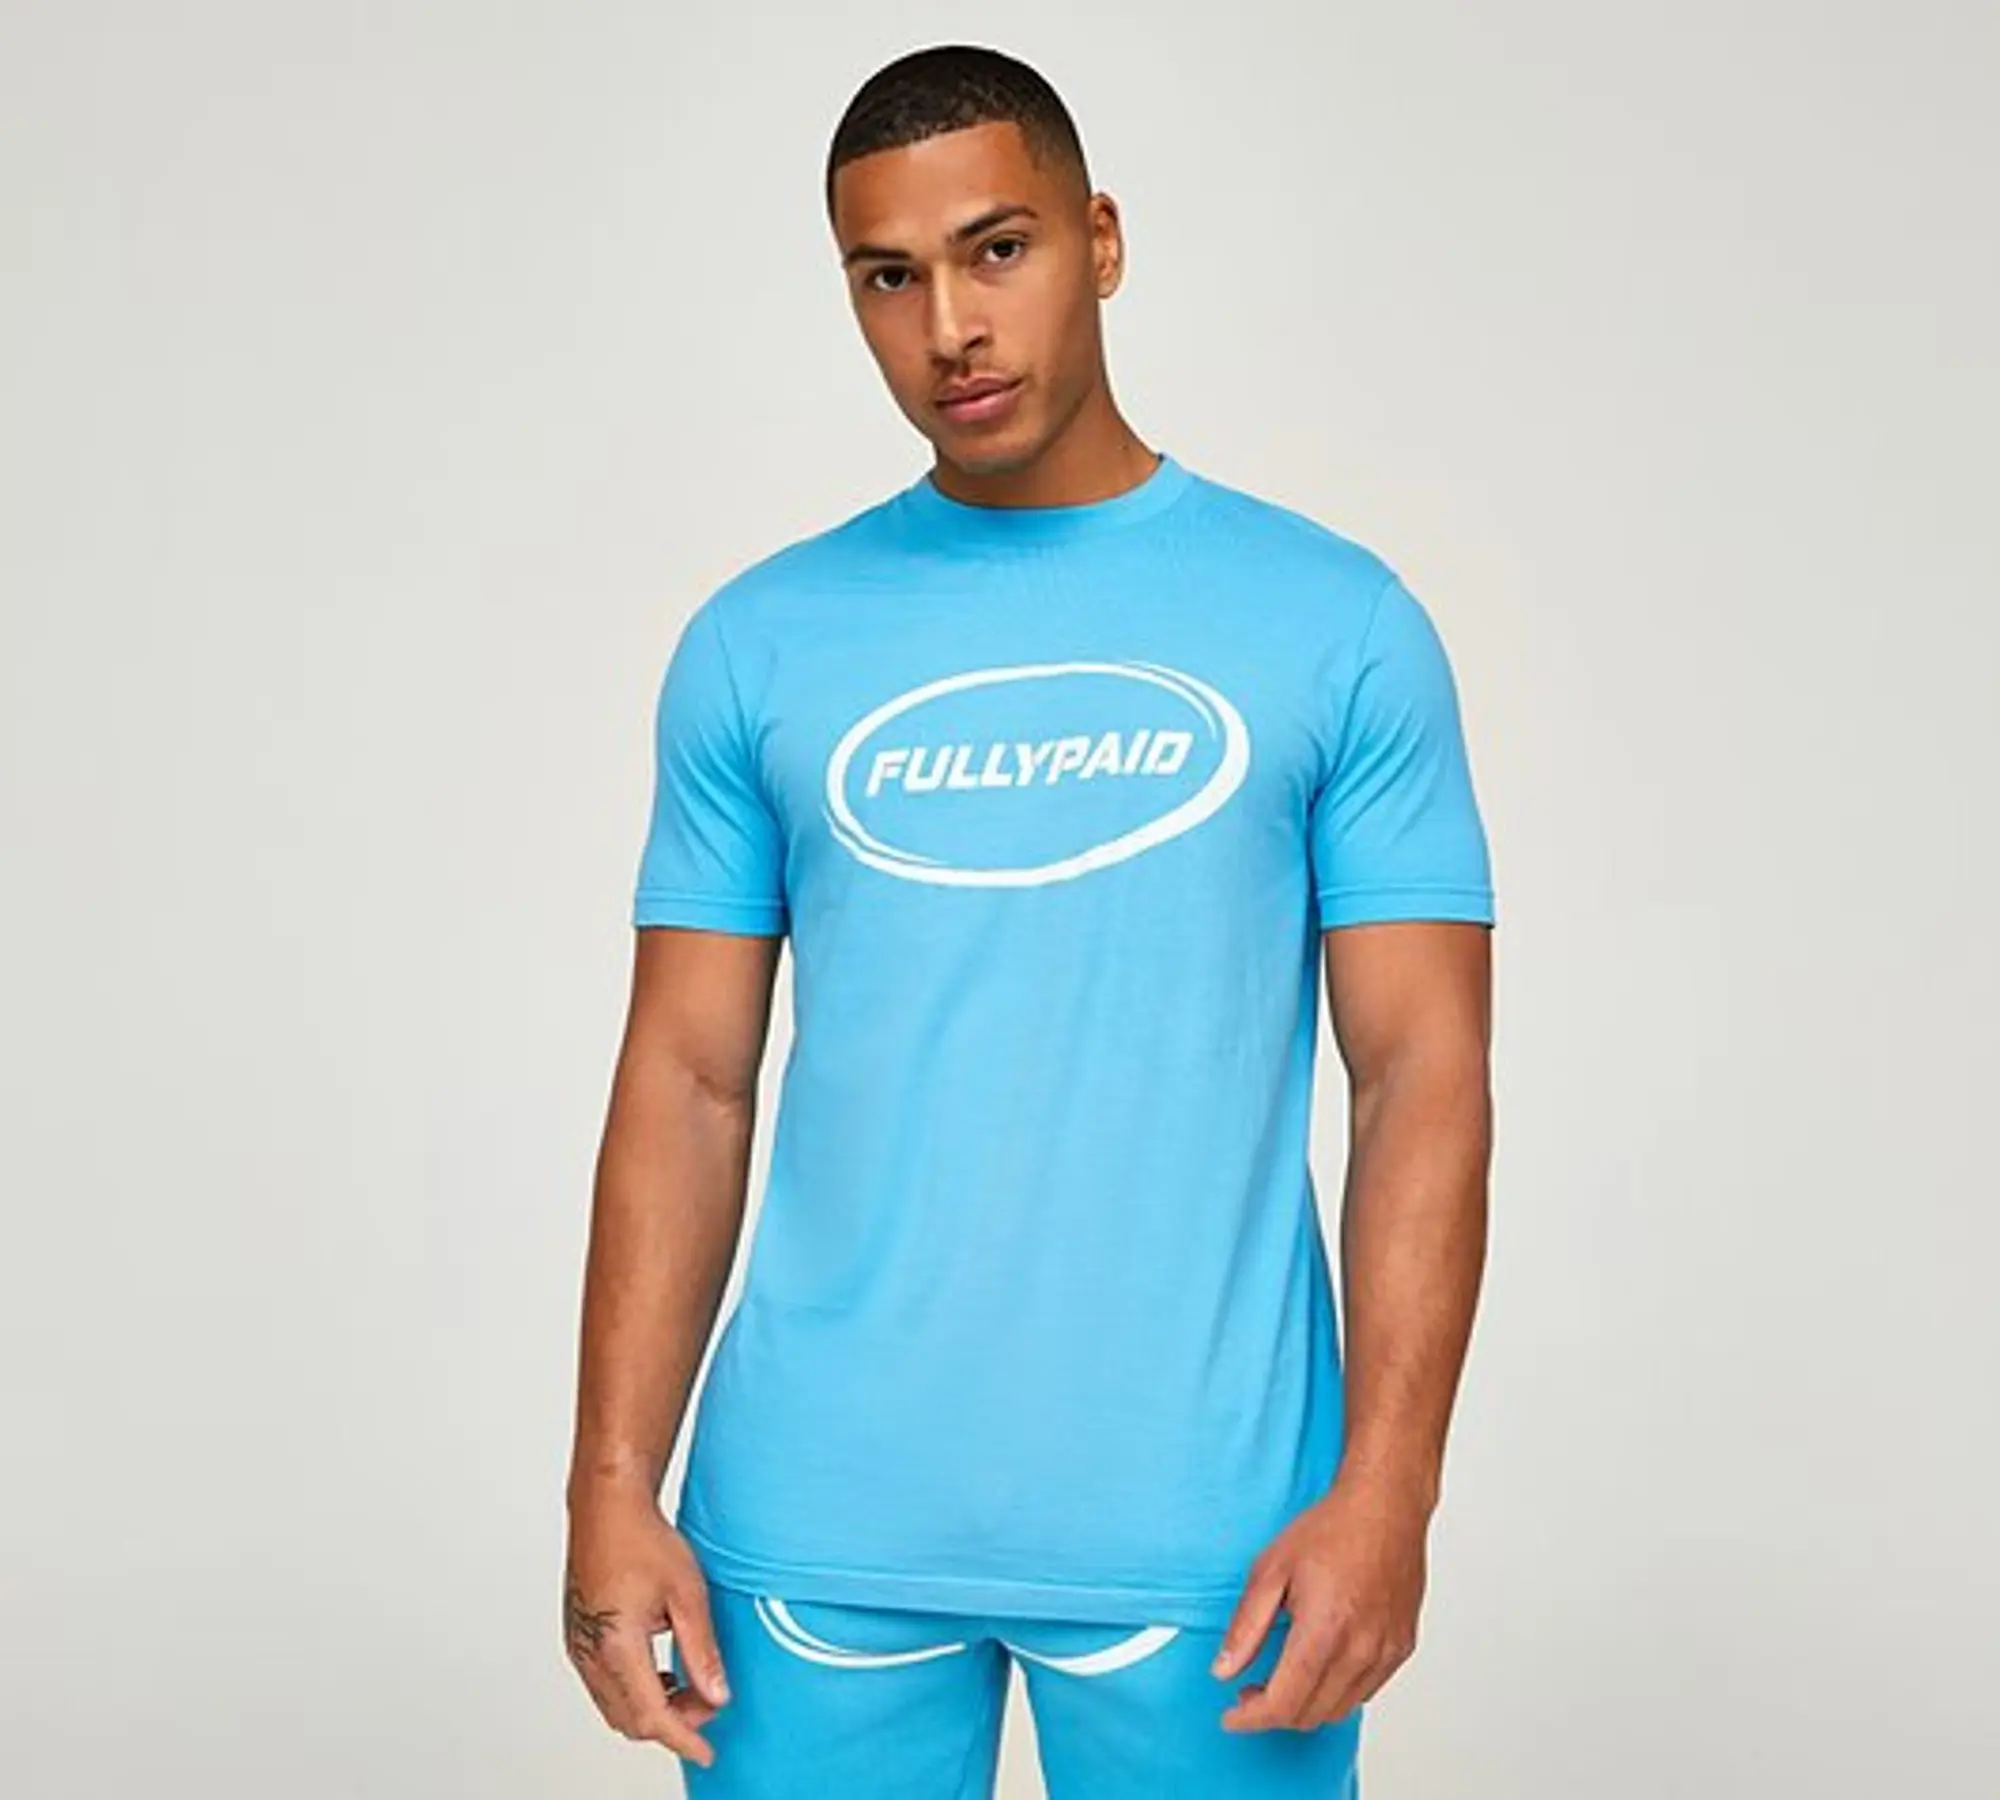 Fullypaid Hustle T-Shirt - Aqua Blue